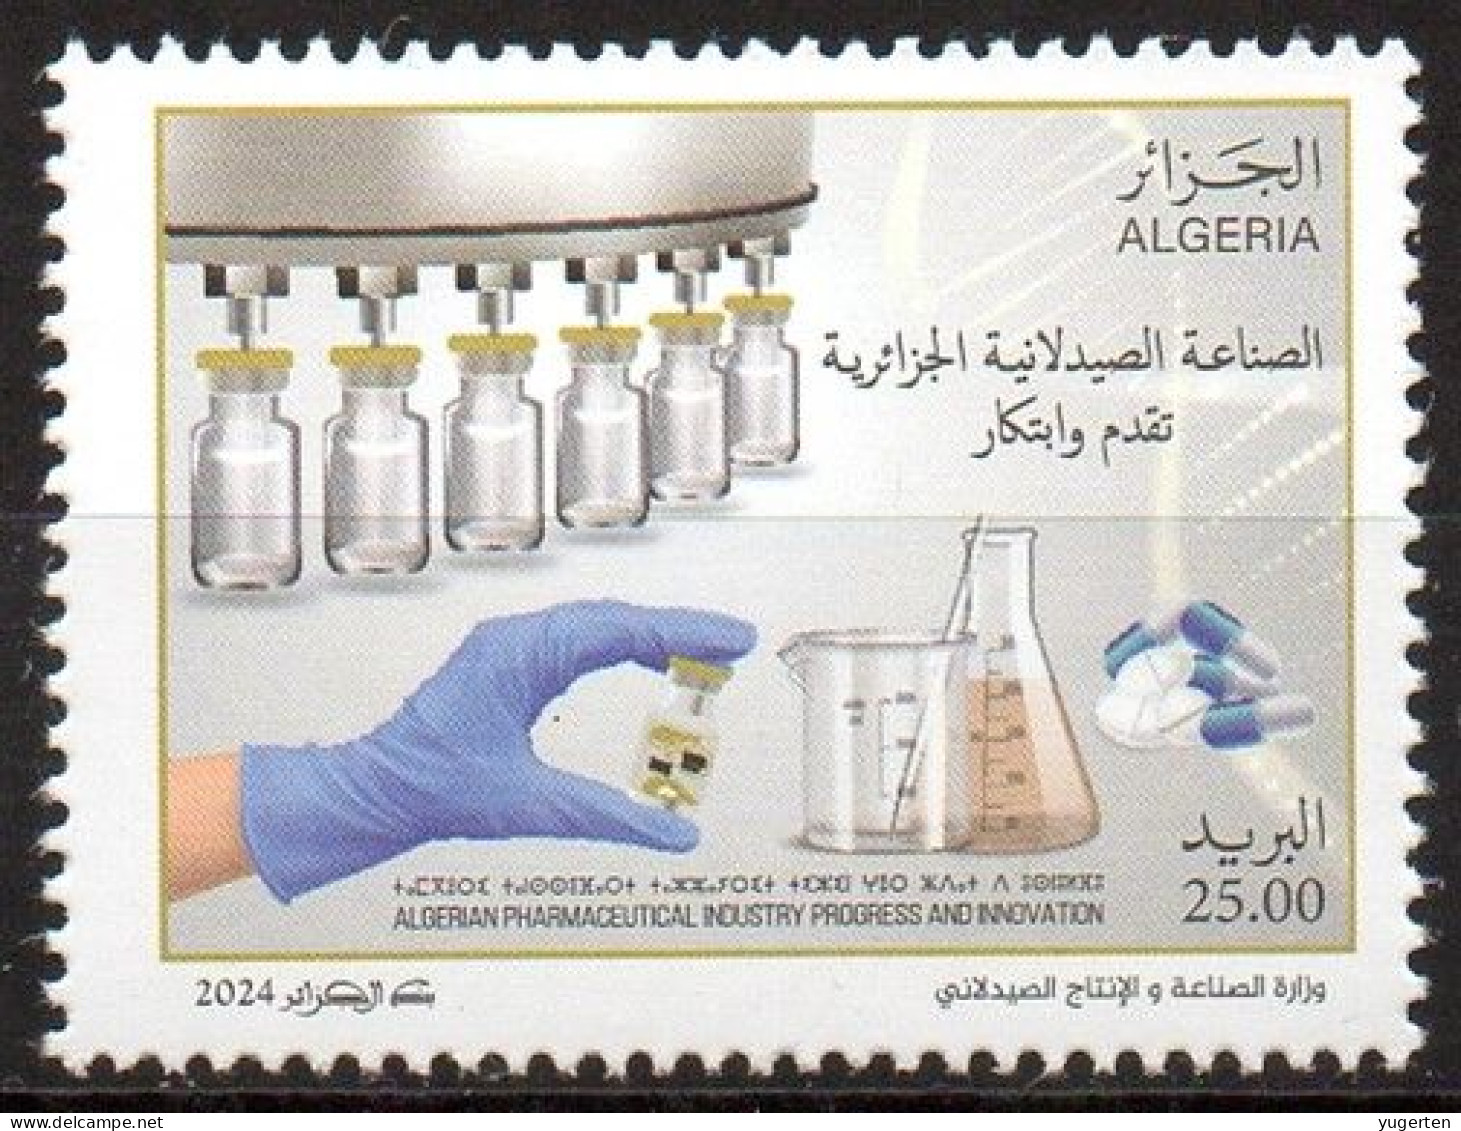 ALGERIE ALGERIA 2024 - 1v - MNH - Industrie Pharmaceutique - Pharmaceutical Industry - Pharmacy - Medicines Pharmacie - Pharmacy